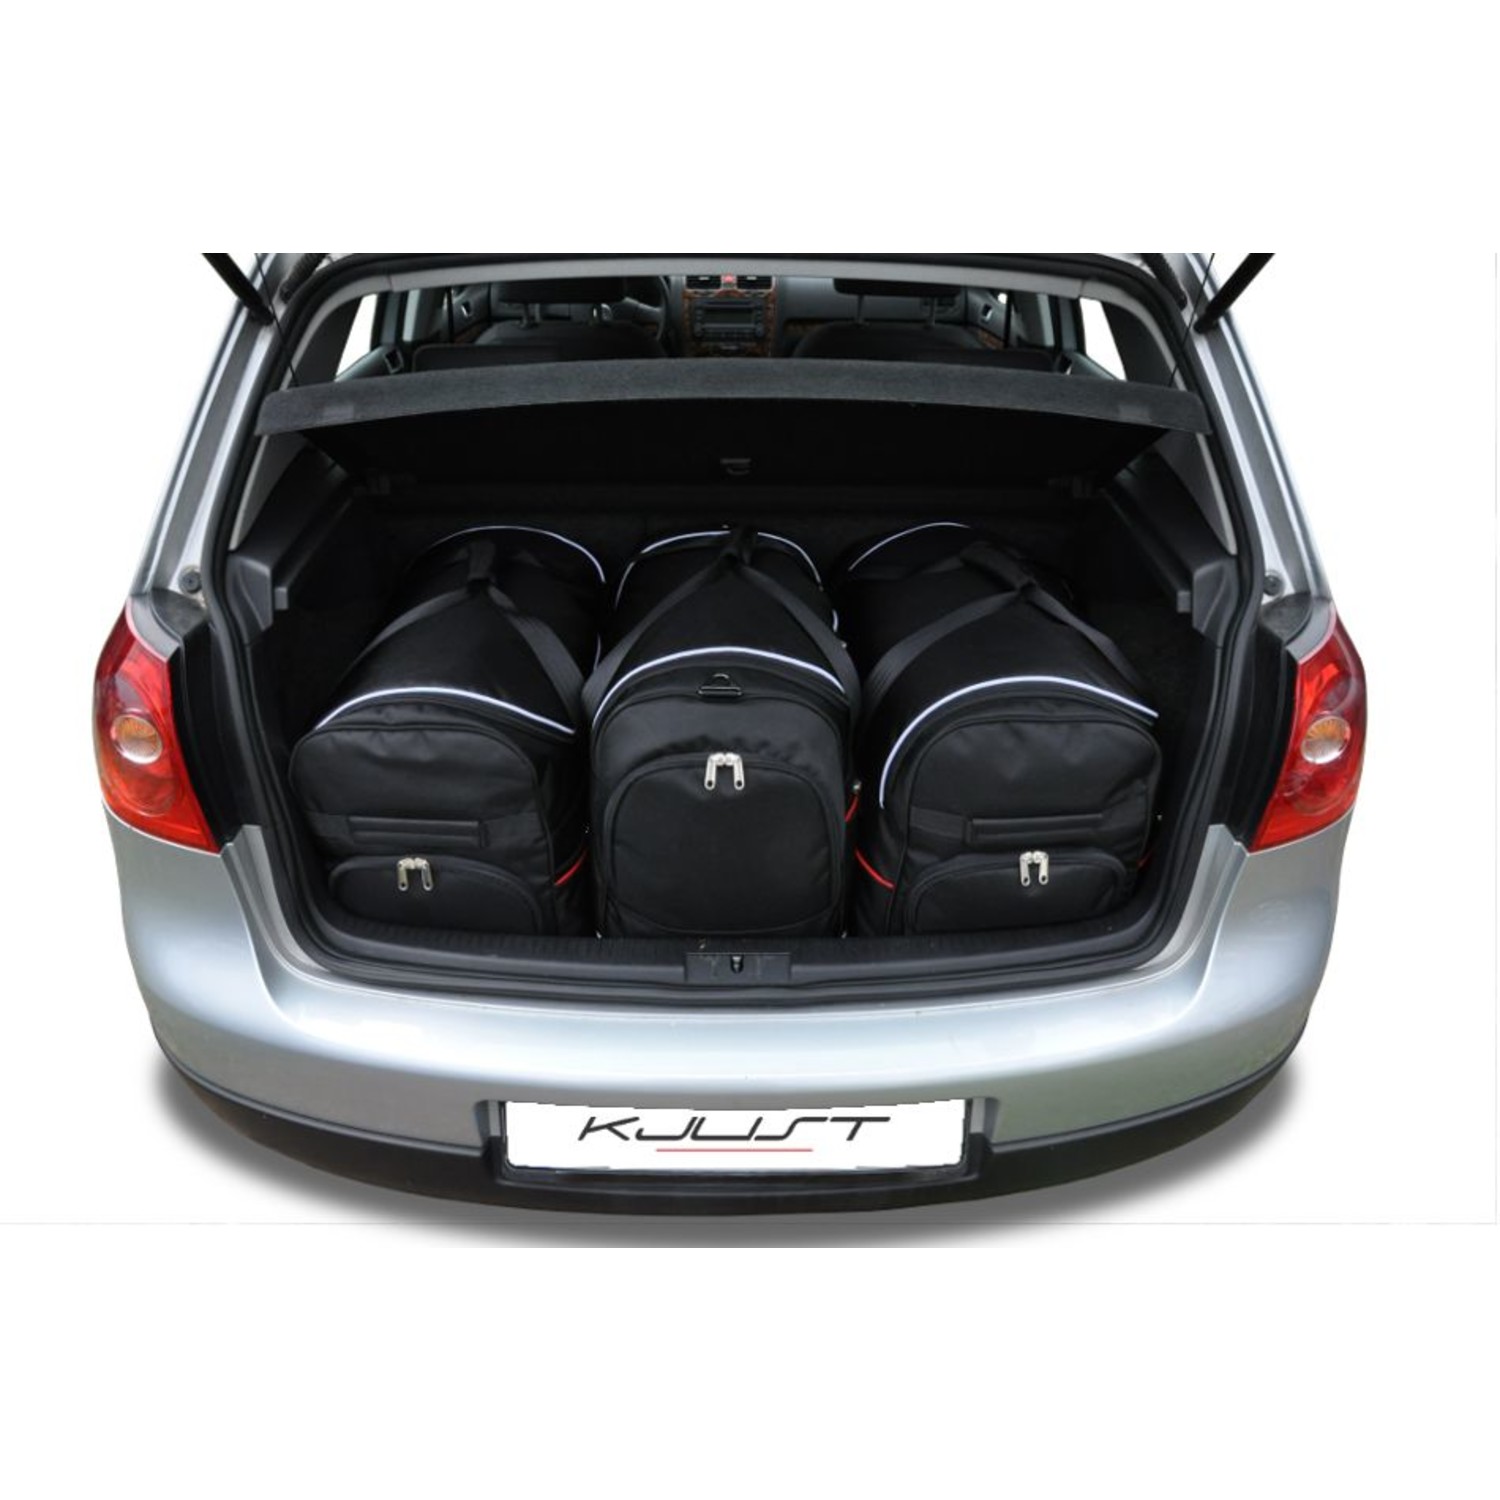 Maßgefertigtes Reisetaschen Set für Volkswagen Golf V - Maluch